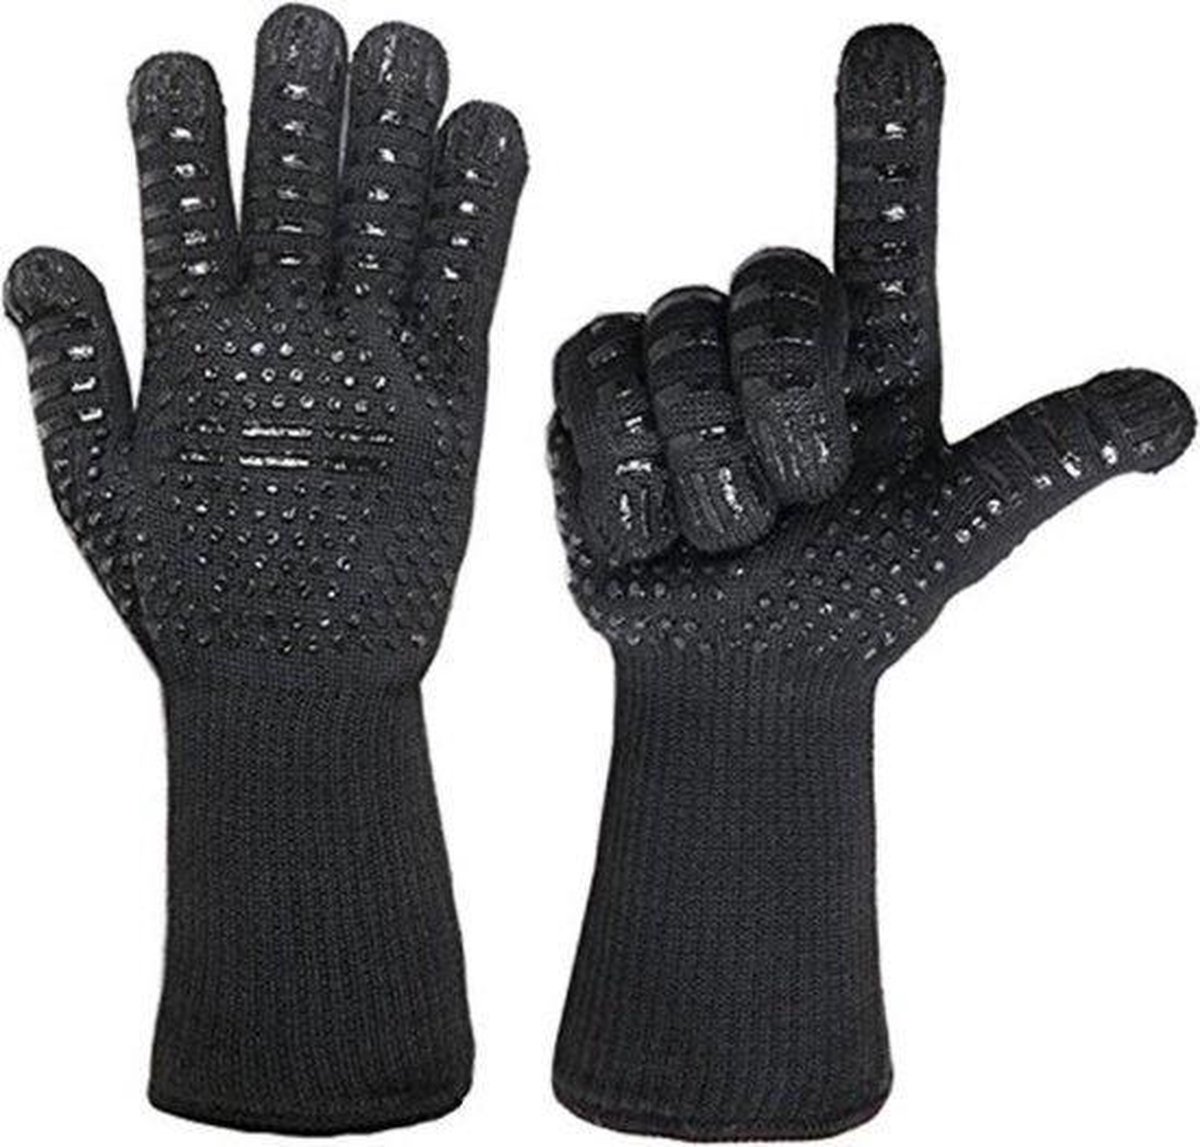 hittebestendige BBQ handschoenen (2 stuks) - Beschermt tot 500°C - EN407 Certificaat - Silicone handschoen met Antislip - Hittebestendig oven handschoen - Barbecue - Open haard - Grill - Koken - Ovenwanten - BBQ Accessoires - Cadeau tip - Shop 7